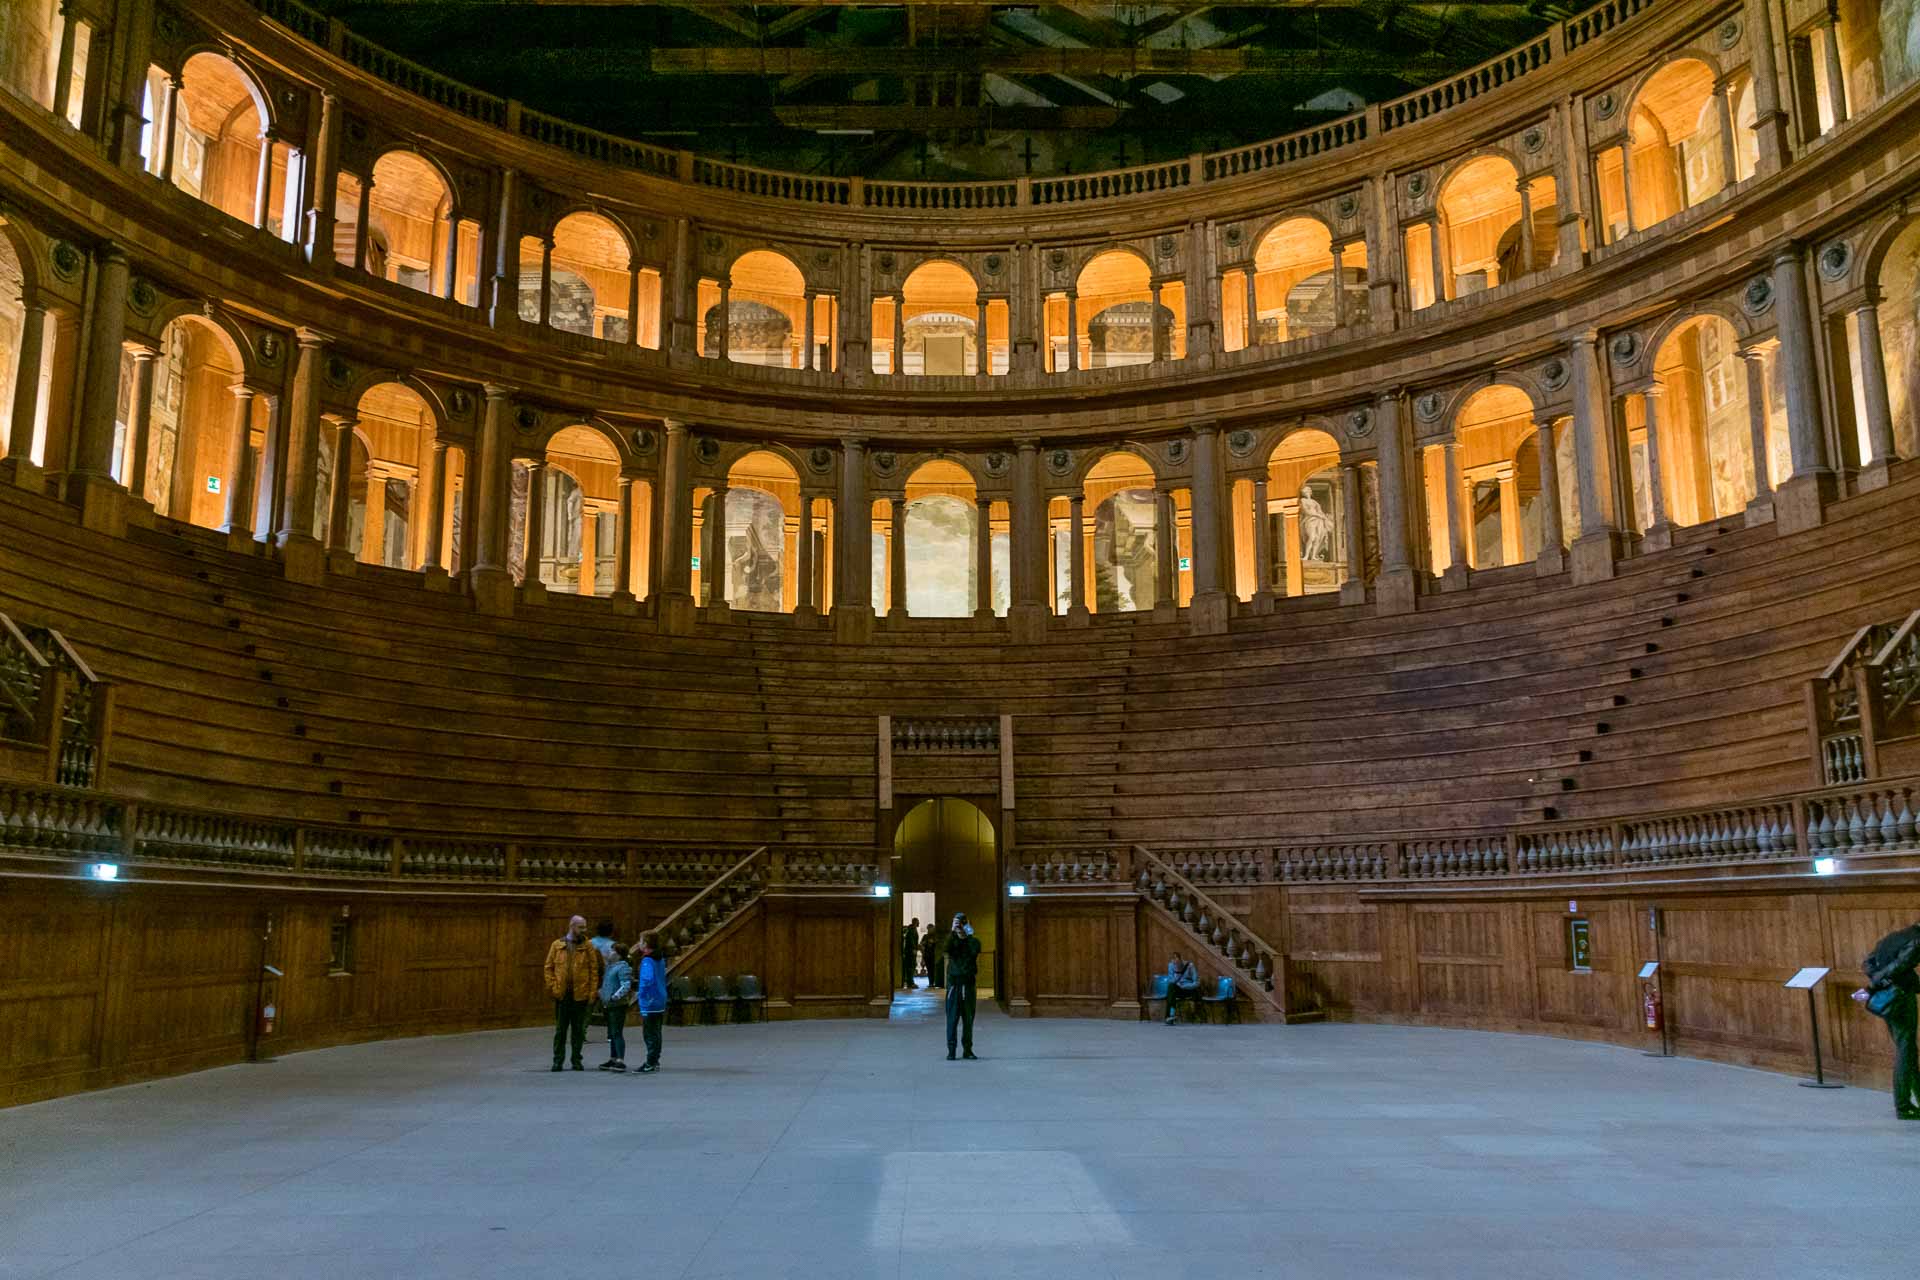 Dentro de um teatro oval com o palco no centro rodeado de assentos